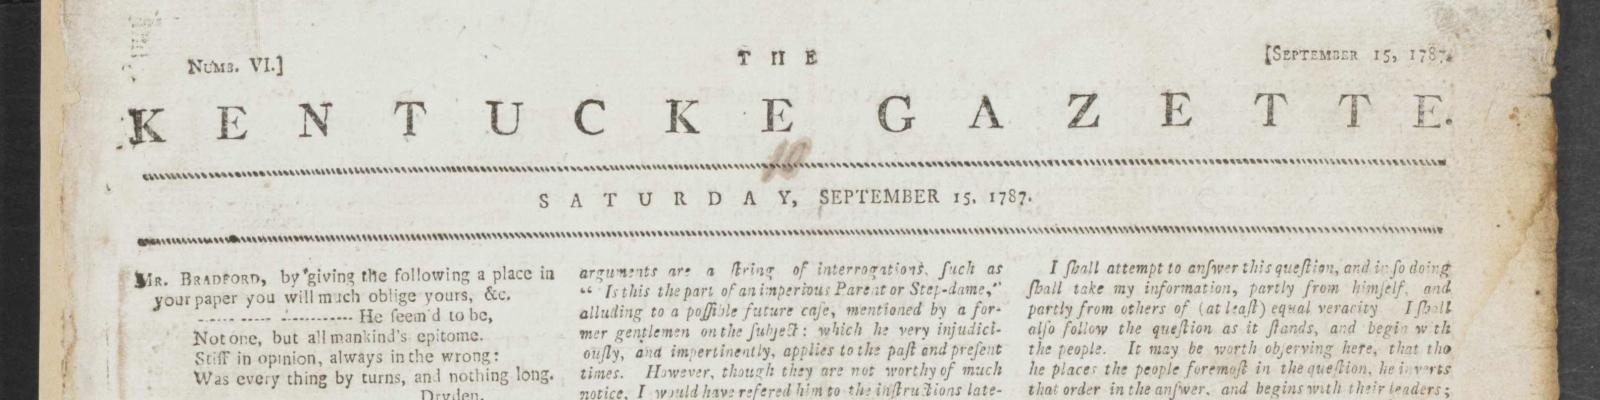 the kentucky gazette 1787